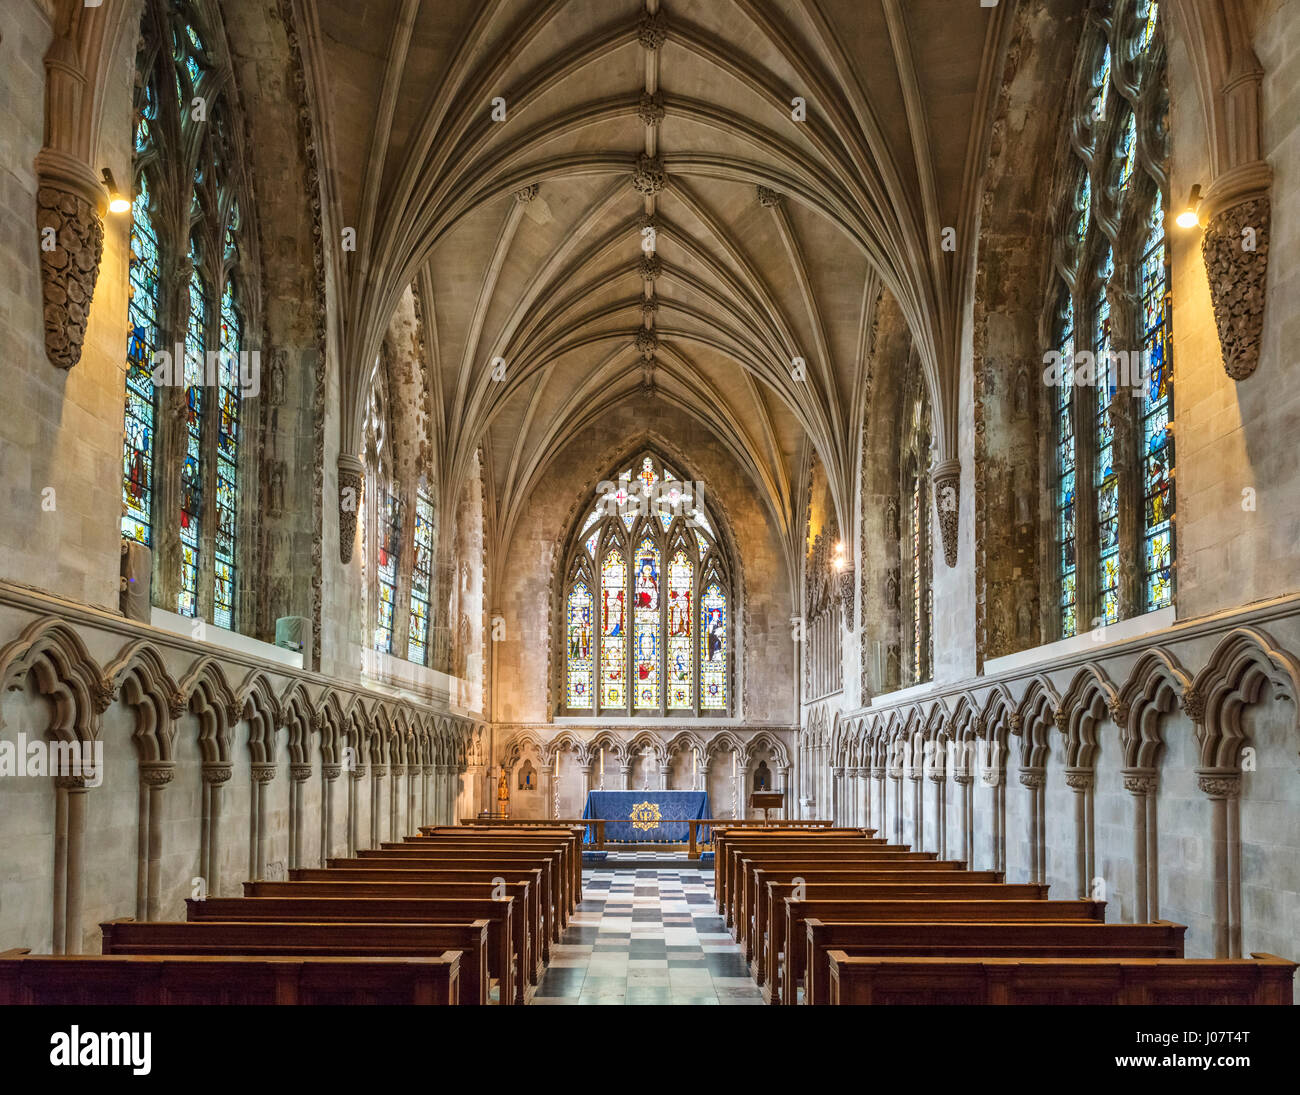 La Cathédrale de St Albans. 14e siècle Chapelle Dame médiévale dans la Cathédrale et l'église abbatiale de St Alban, St Albans, Hertfordshire, England, UK Banque D'Images